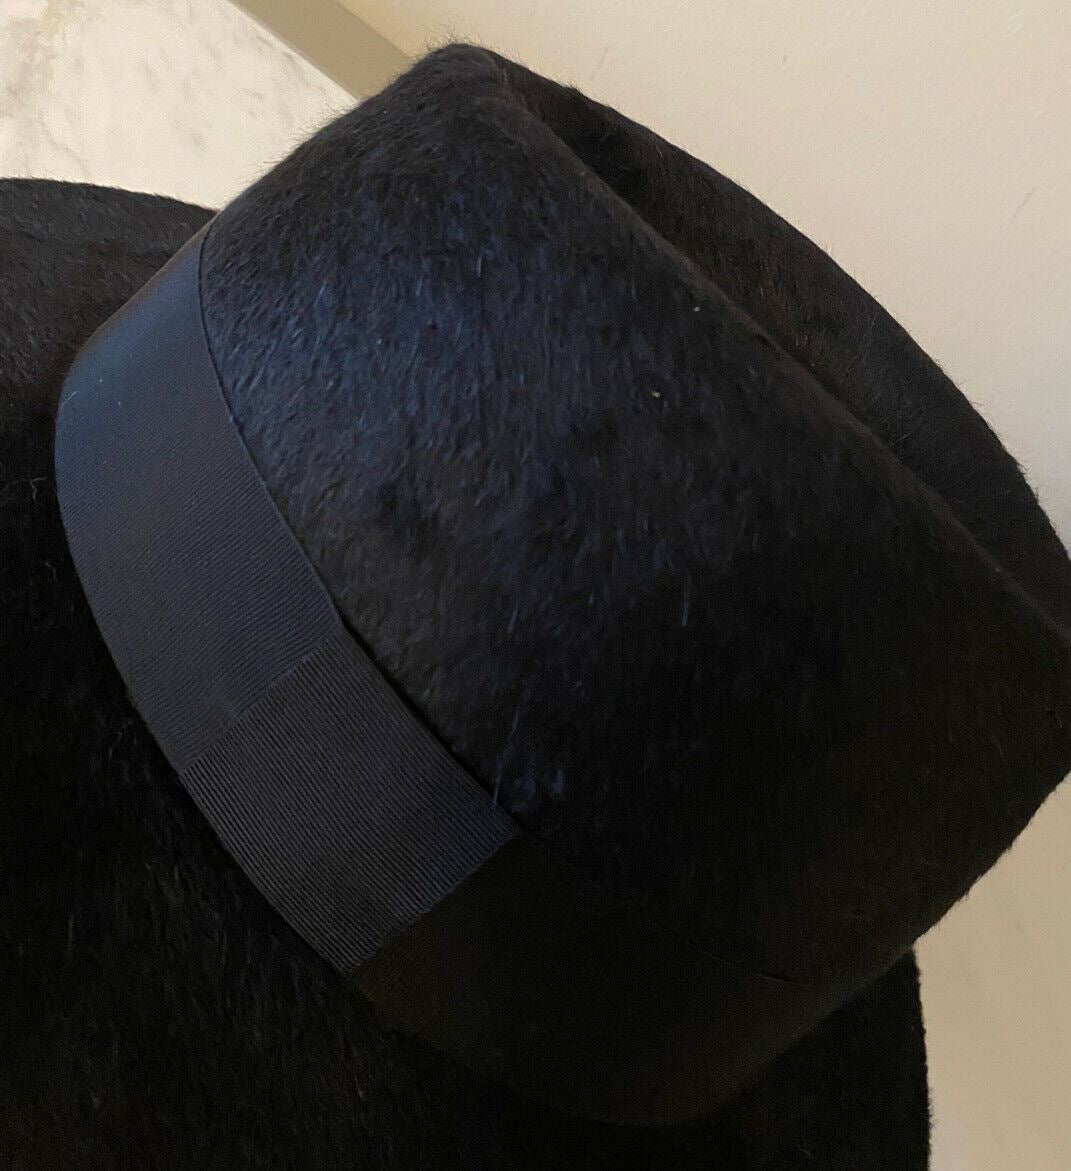 Neu mit Etikett: 995 $ Saint Laurent Herren-Fedora-Hut aus zotteligem Filz, Schwarz, Größe S, Italien